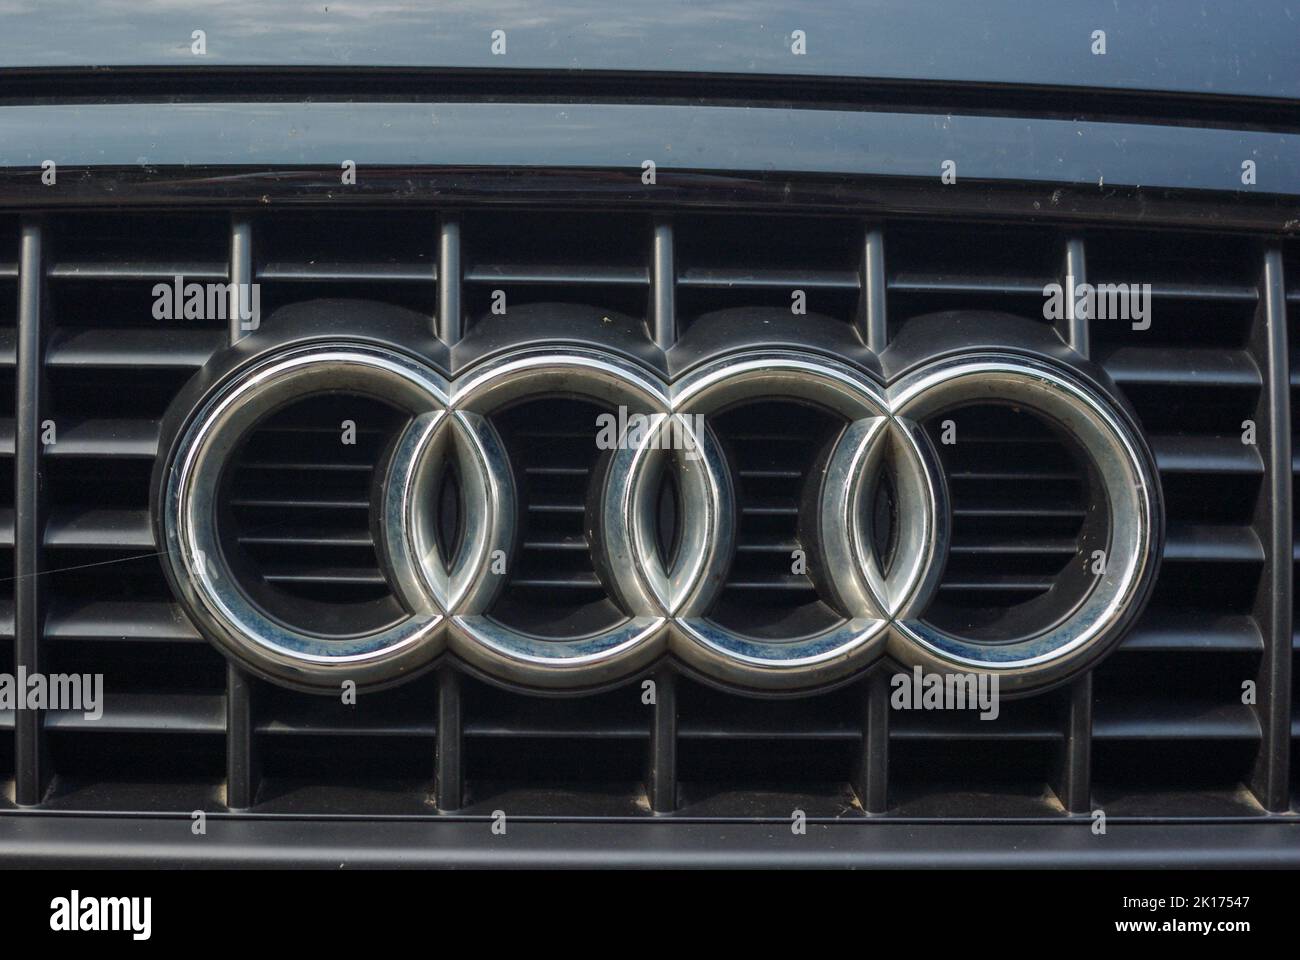 Primer plano de un distintivo de coche Audi compuesto por cuatro anillos de enclavamiento en una rejilla de radiador, Reino Unido Foto de stock